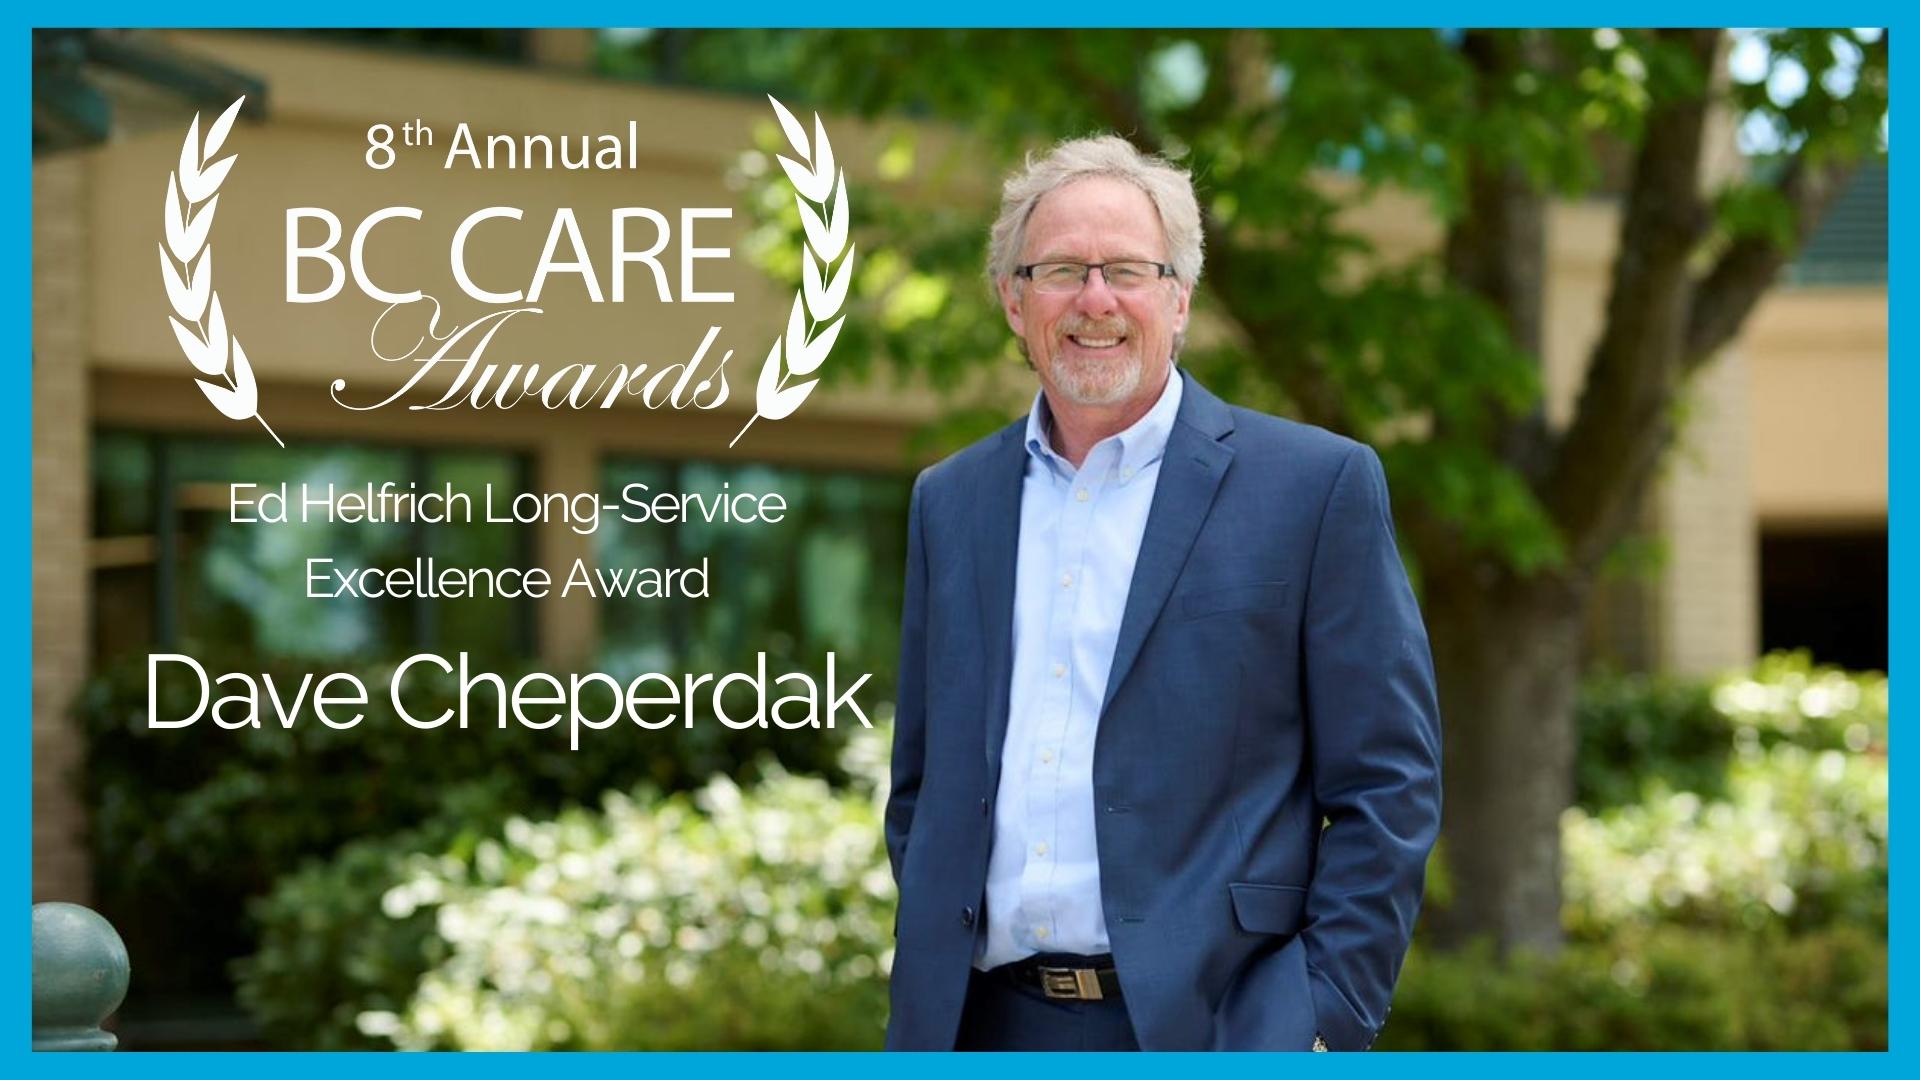 Congratulations, Dave Cheperdak! Winner of the Ed Helfrich Long-Service Excellence Award